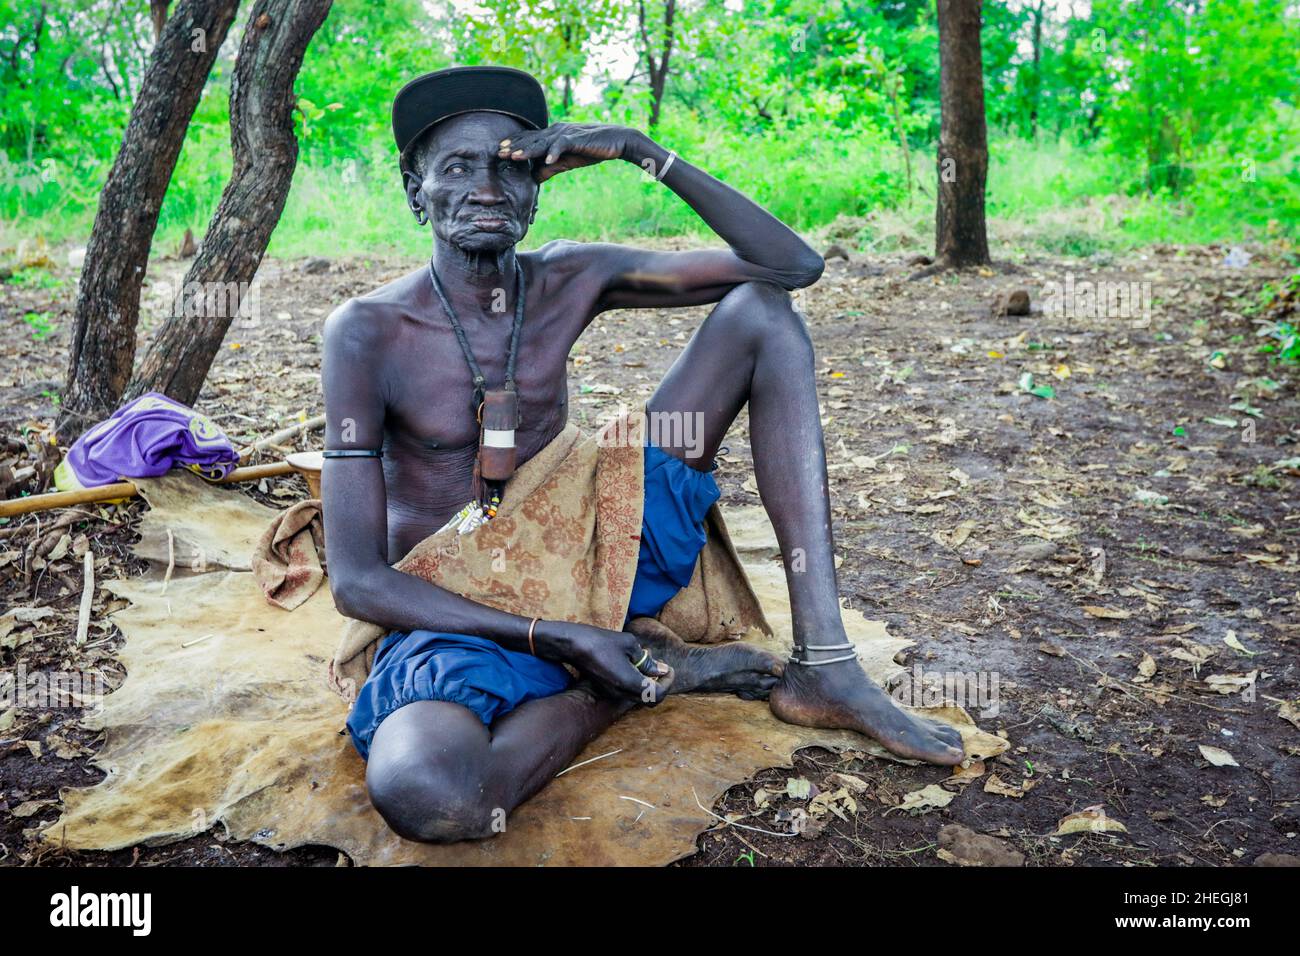 Vallée de la rivière Omo, Éthiopie - 29 novembre 2020 : Portrait de l'homme africain dans la tribu Mursi locale Banque D'Images